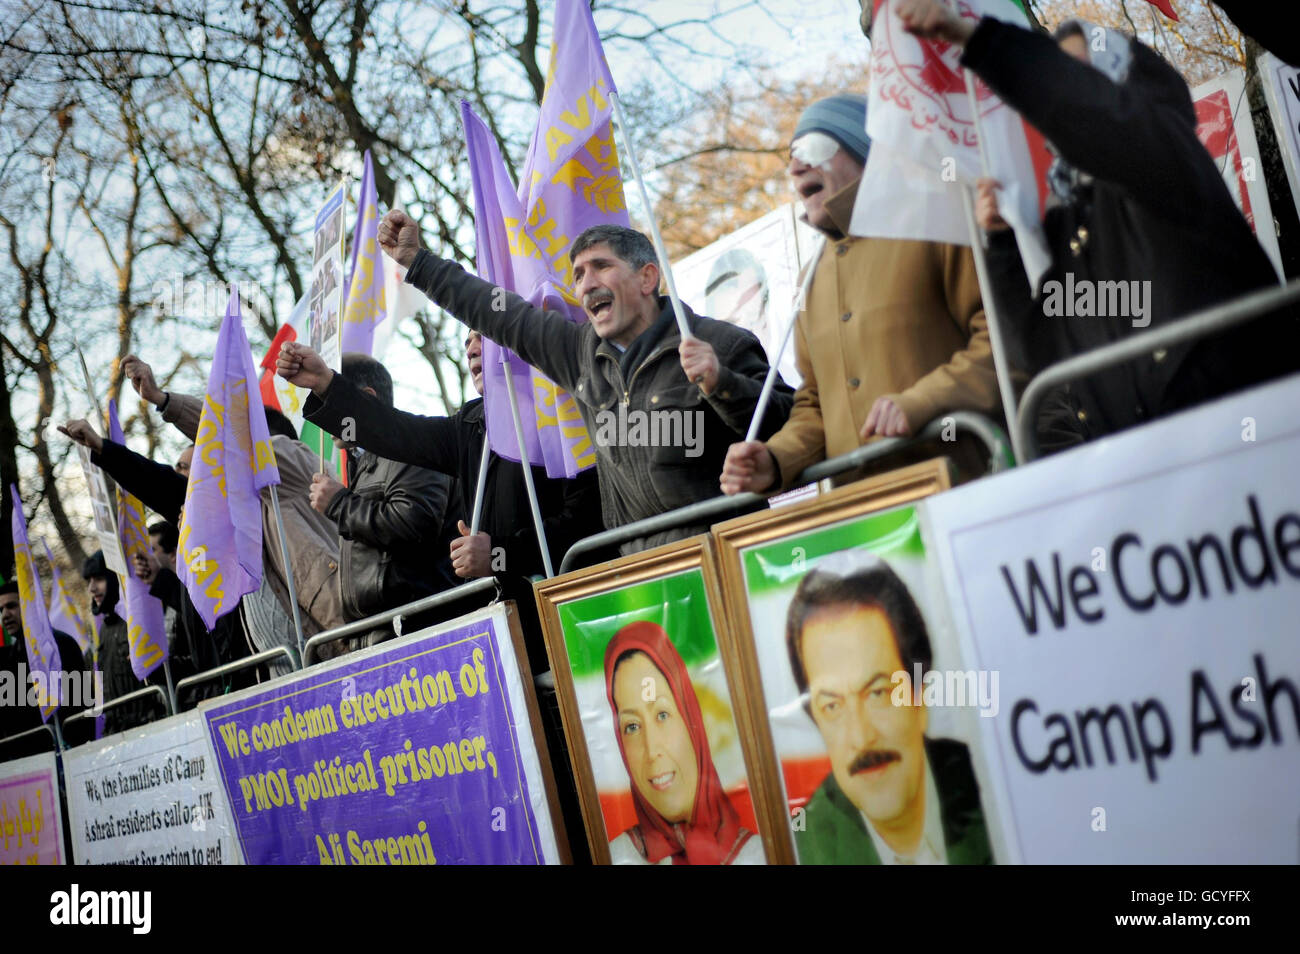 Des membres de la communauté iranienne manifestent devant l'ambassade iranienne à la porte du Prince, à Londres, pour protester contre l'attaque récente contre des résidents du camp Ashraf. Banque D'Images